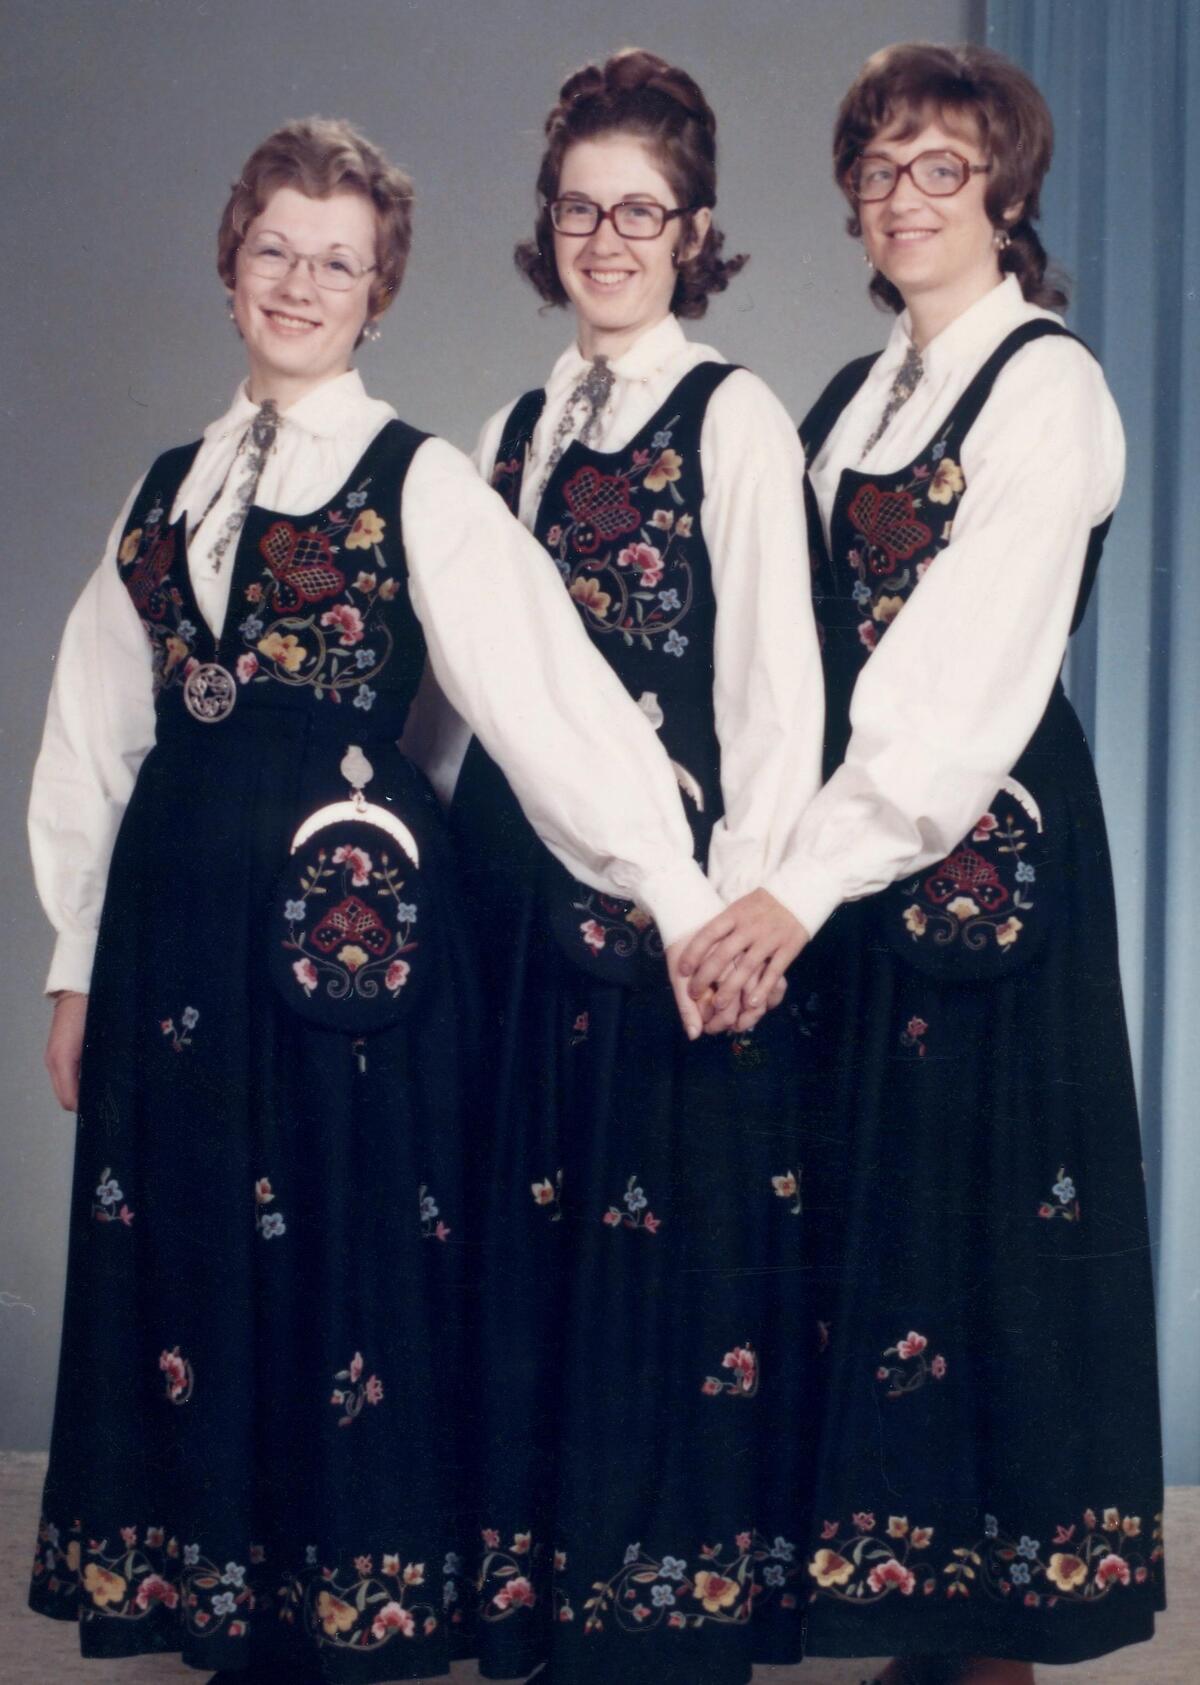 BUNADSJENTER. De tre søstrene Bjørg, Liv og Åse (til høyre) hadde like bunader, og dem var det moren som hadde sydd til dem. Her er trioen fotografert på Bjørgs konfirmasjonsdag i 1972. (Foto. Privat)